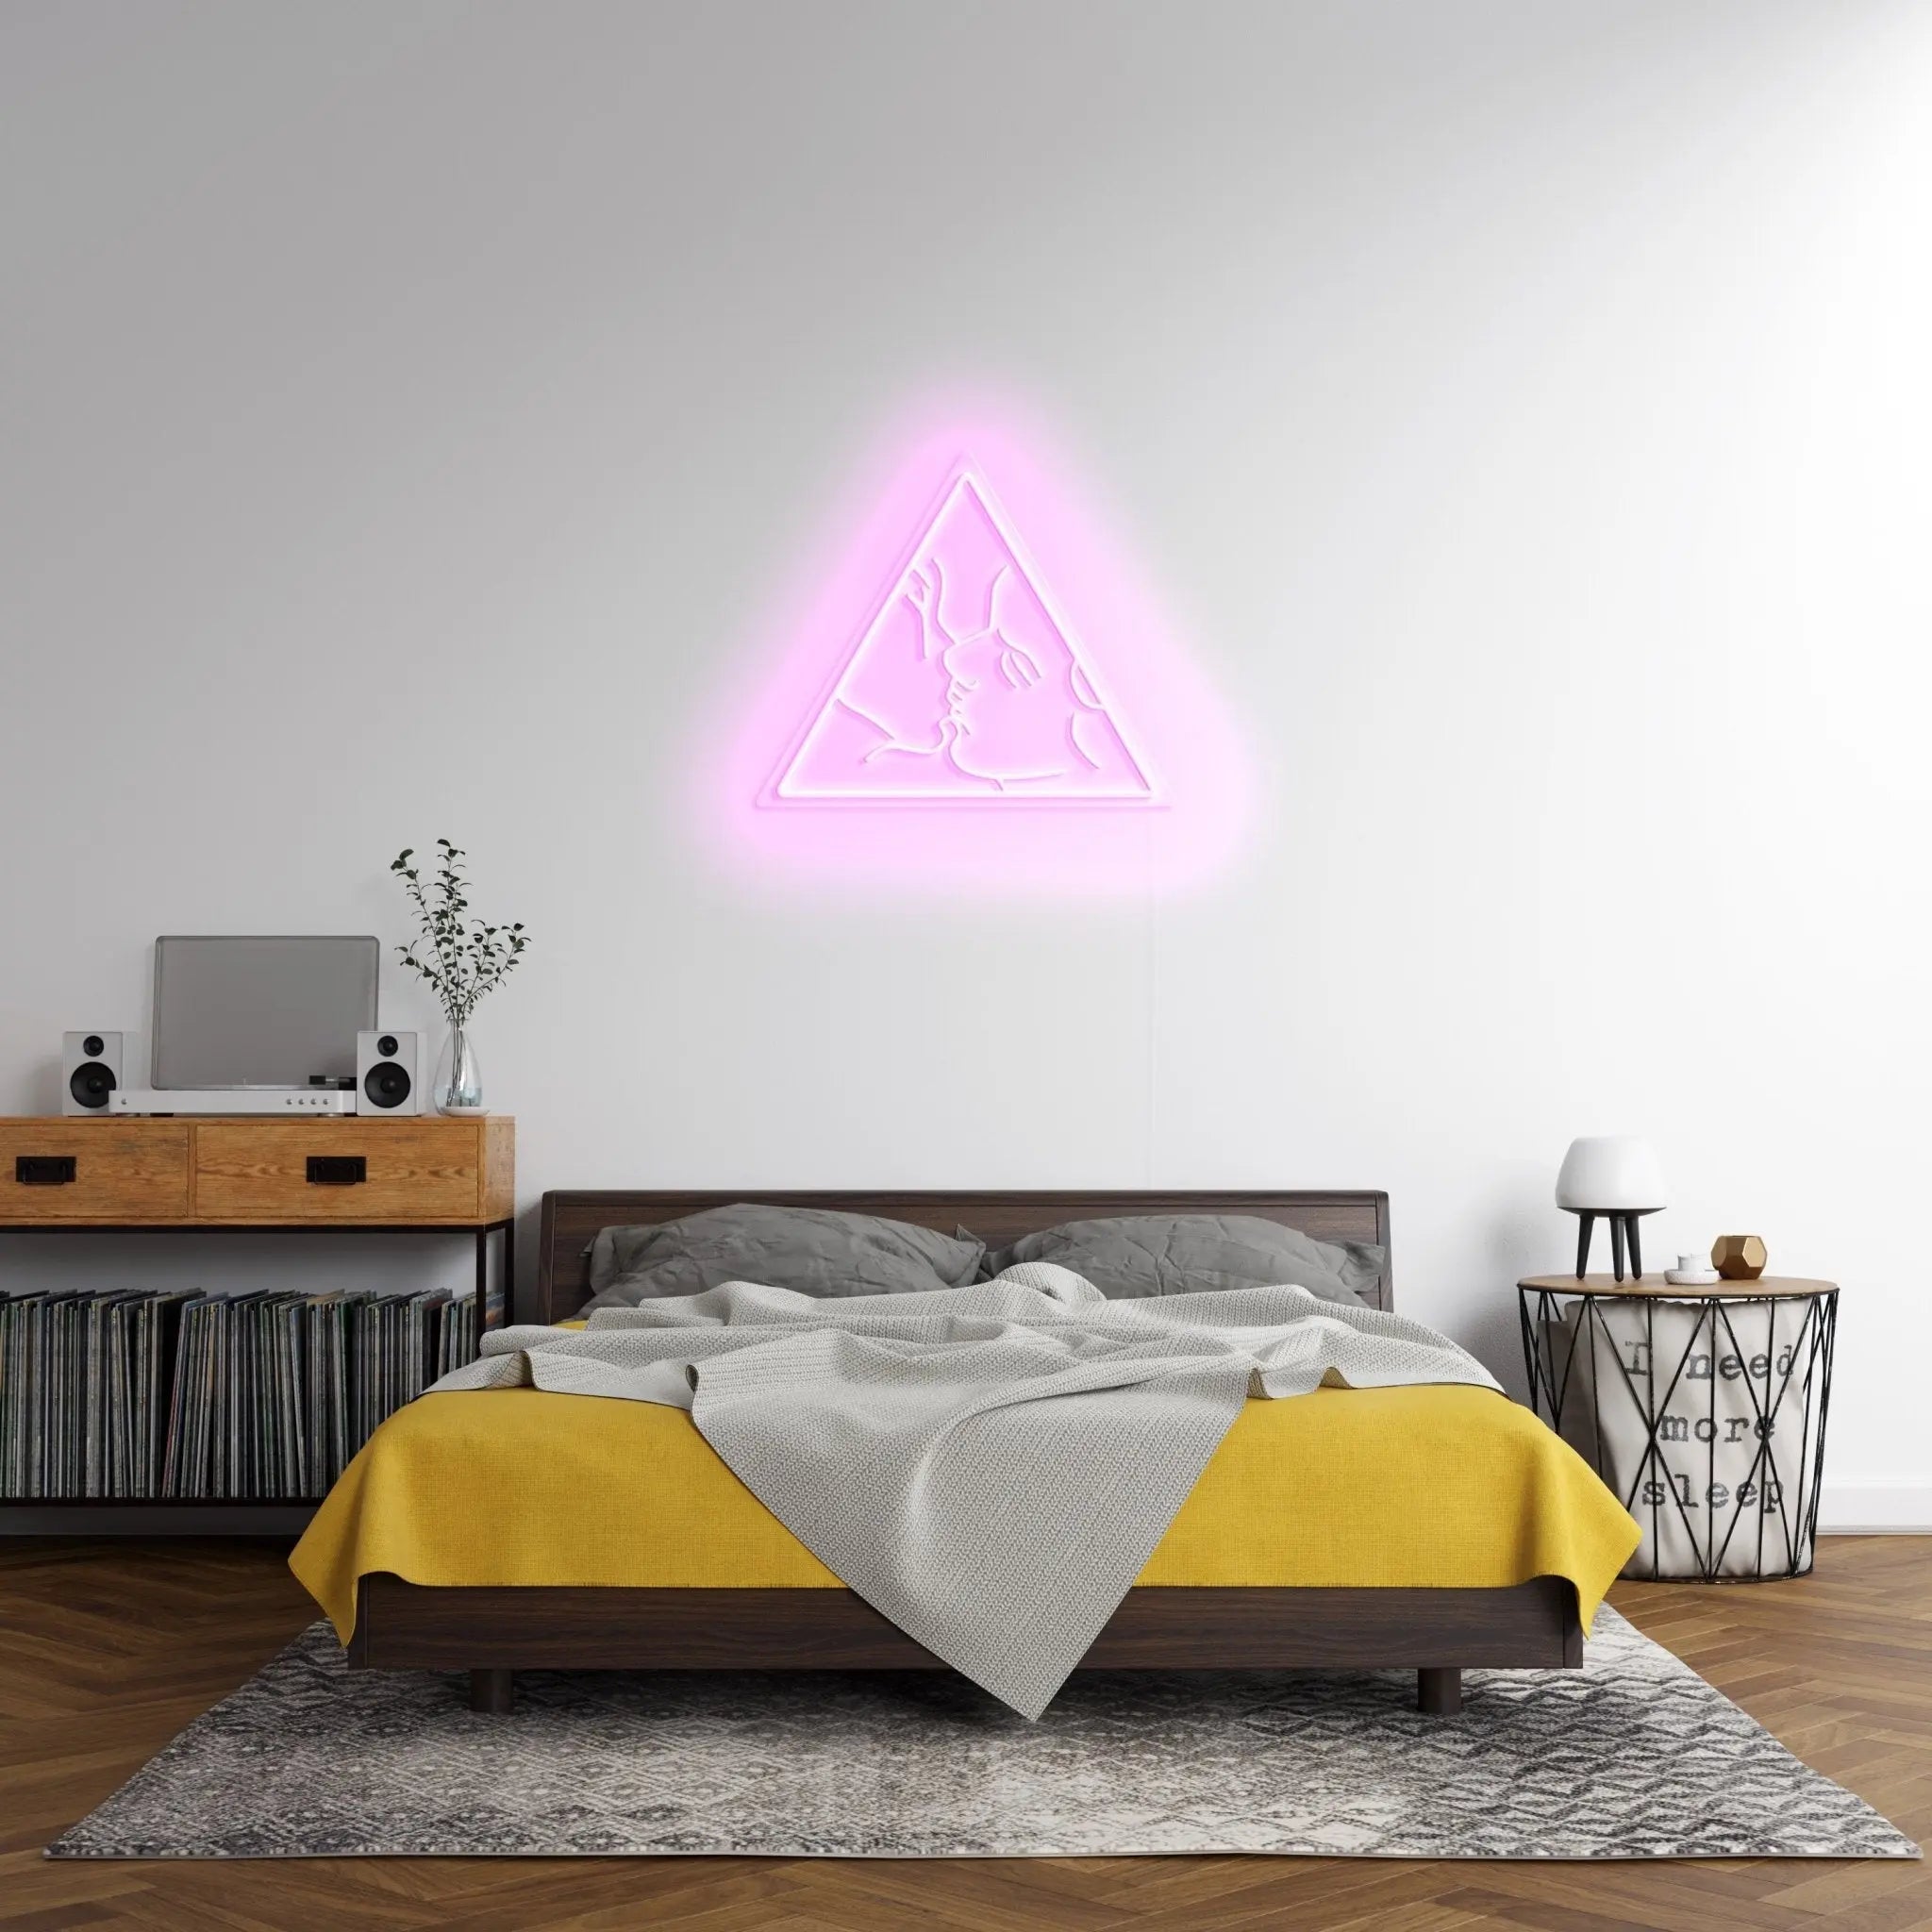 'Aesthete' LED Neon Sign - neonaffair